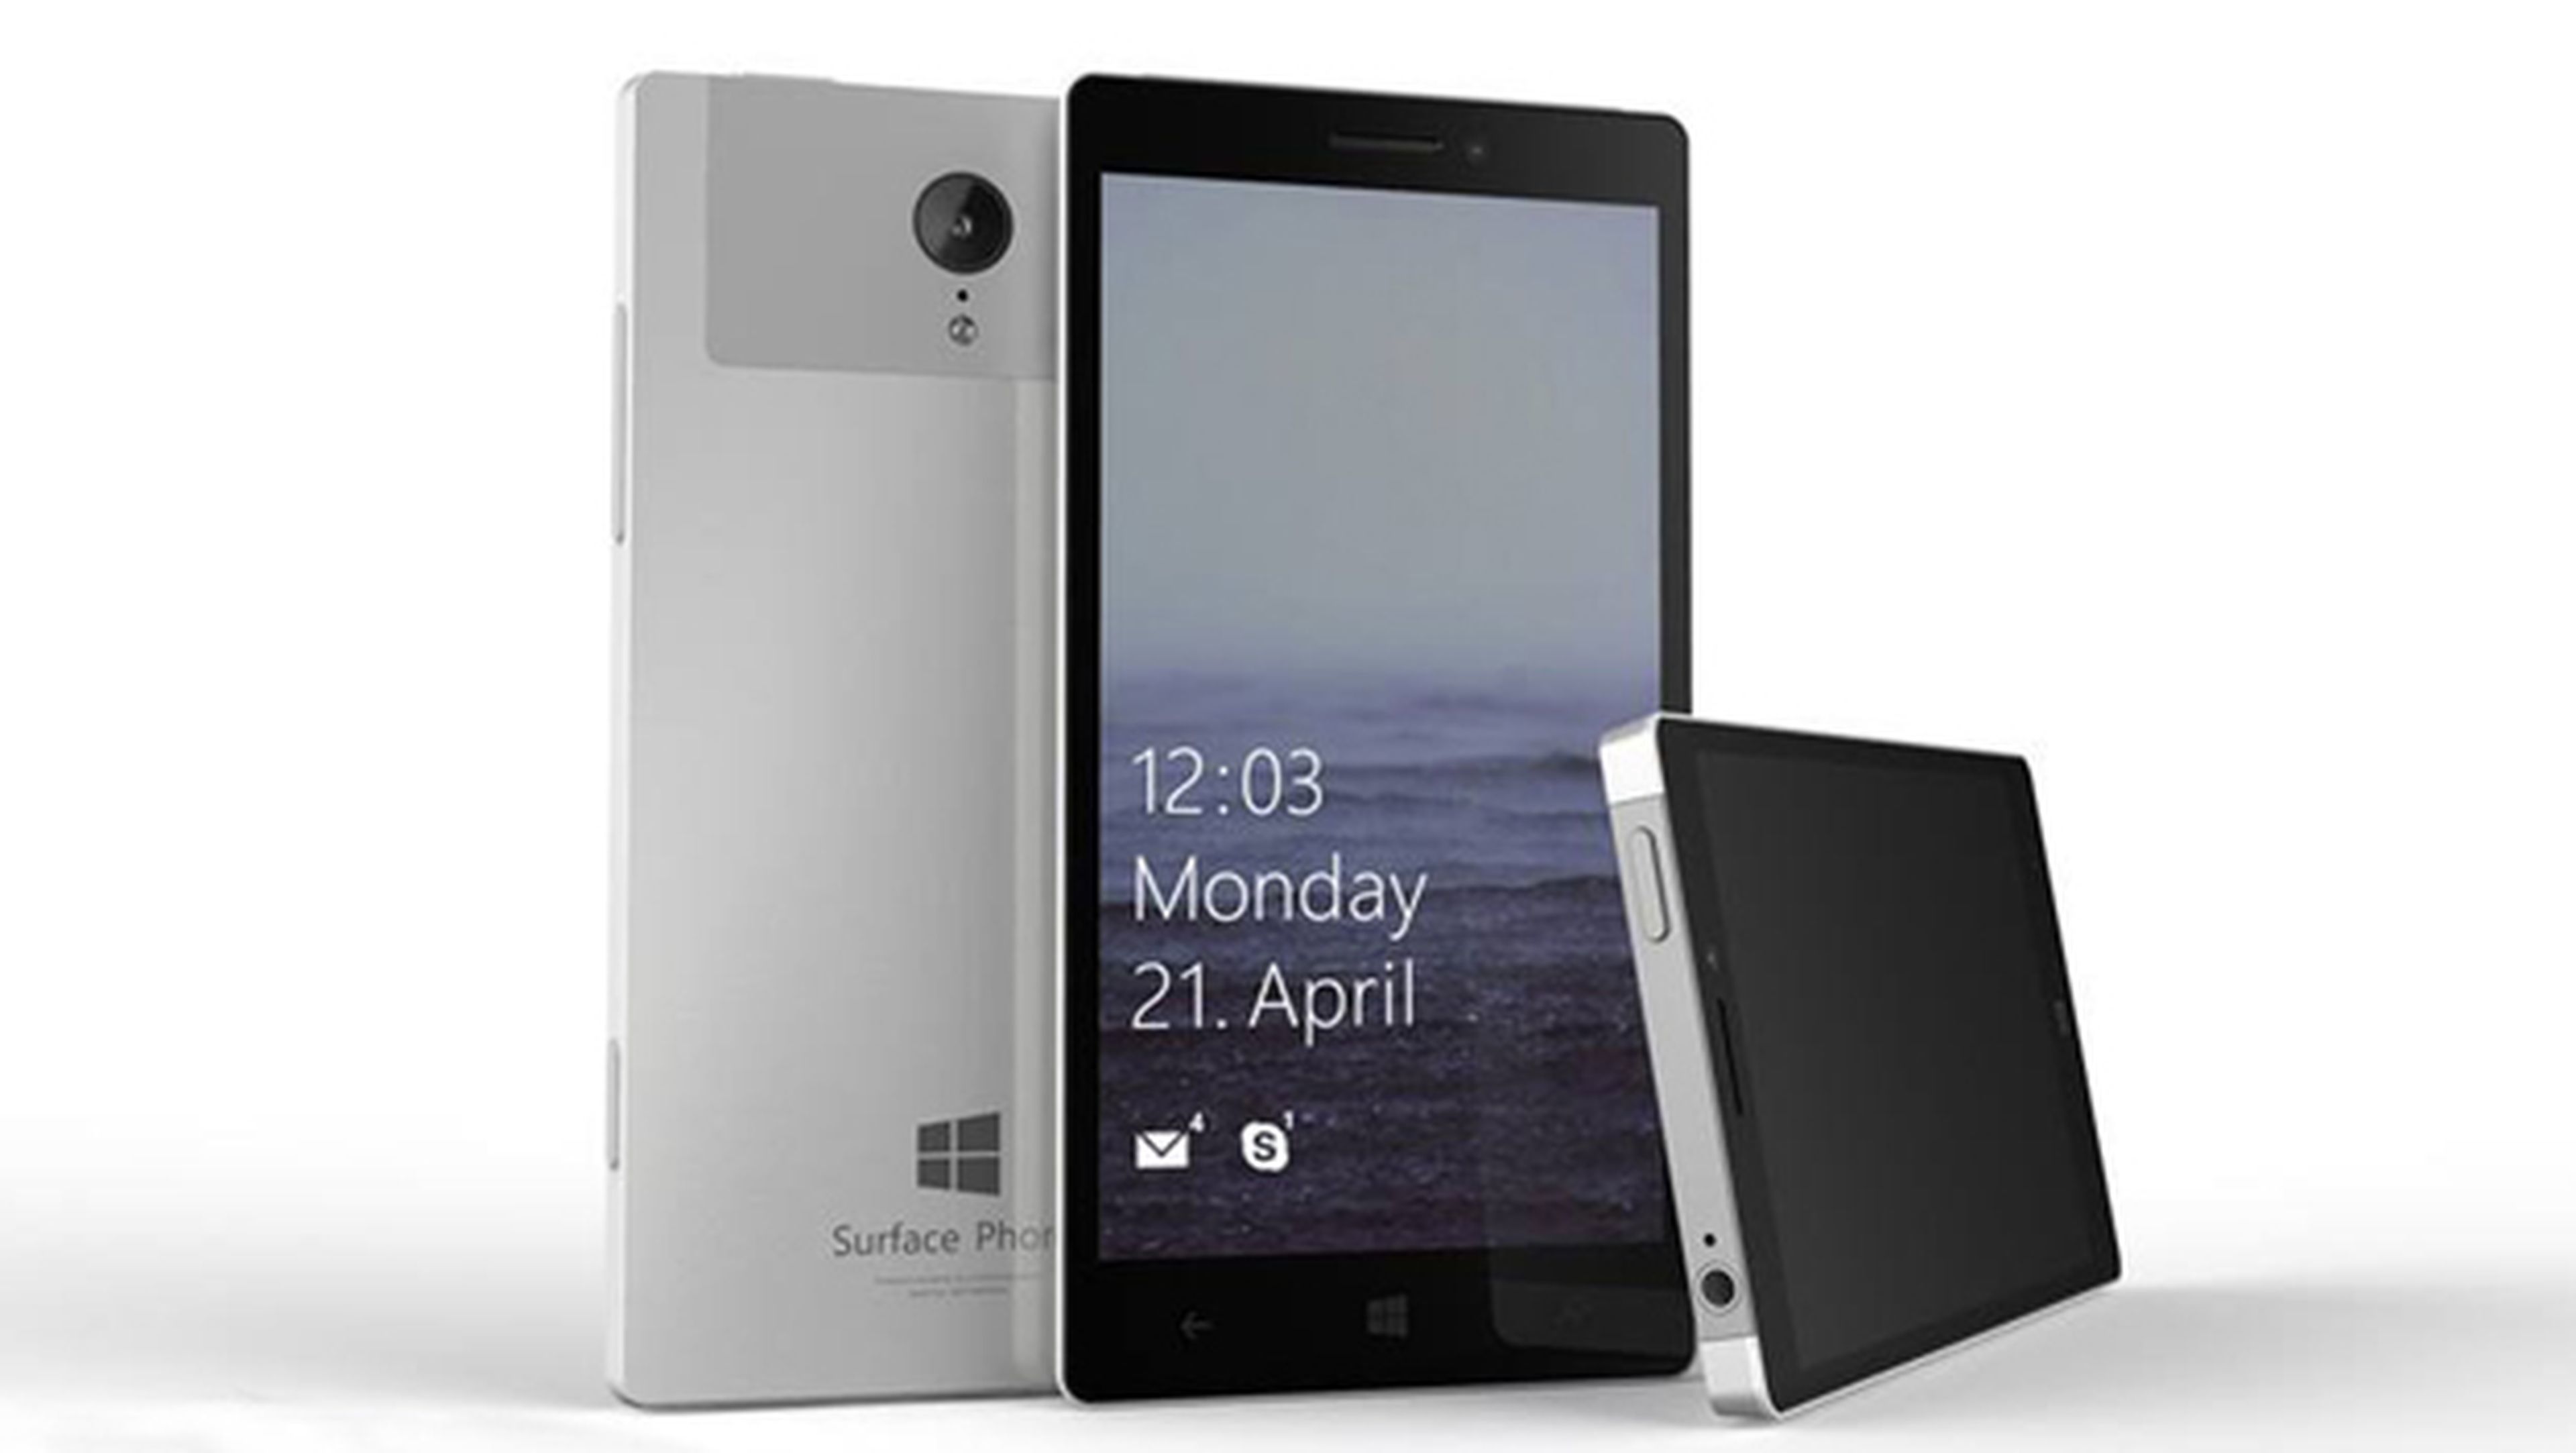 Imagen no oficial del Surface Phone